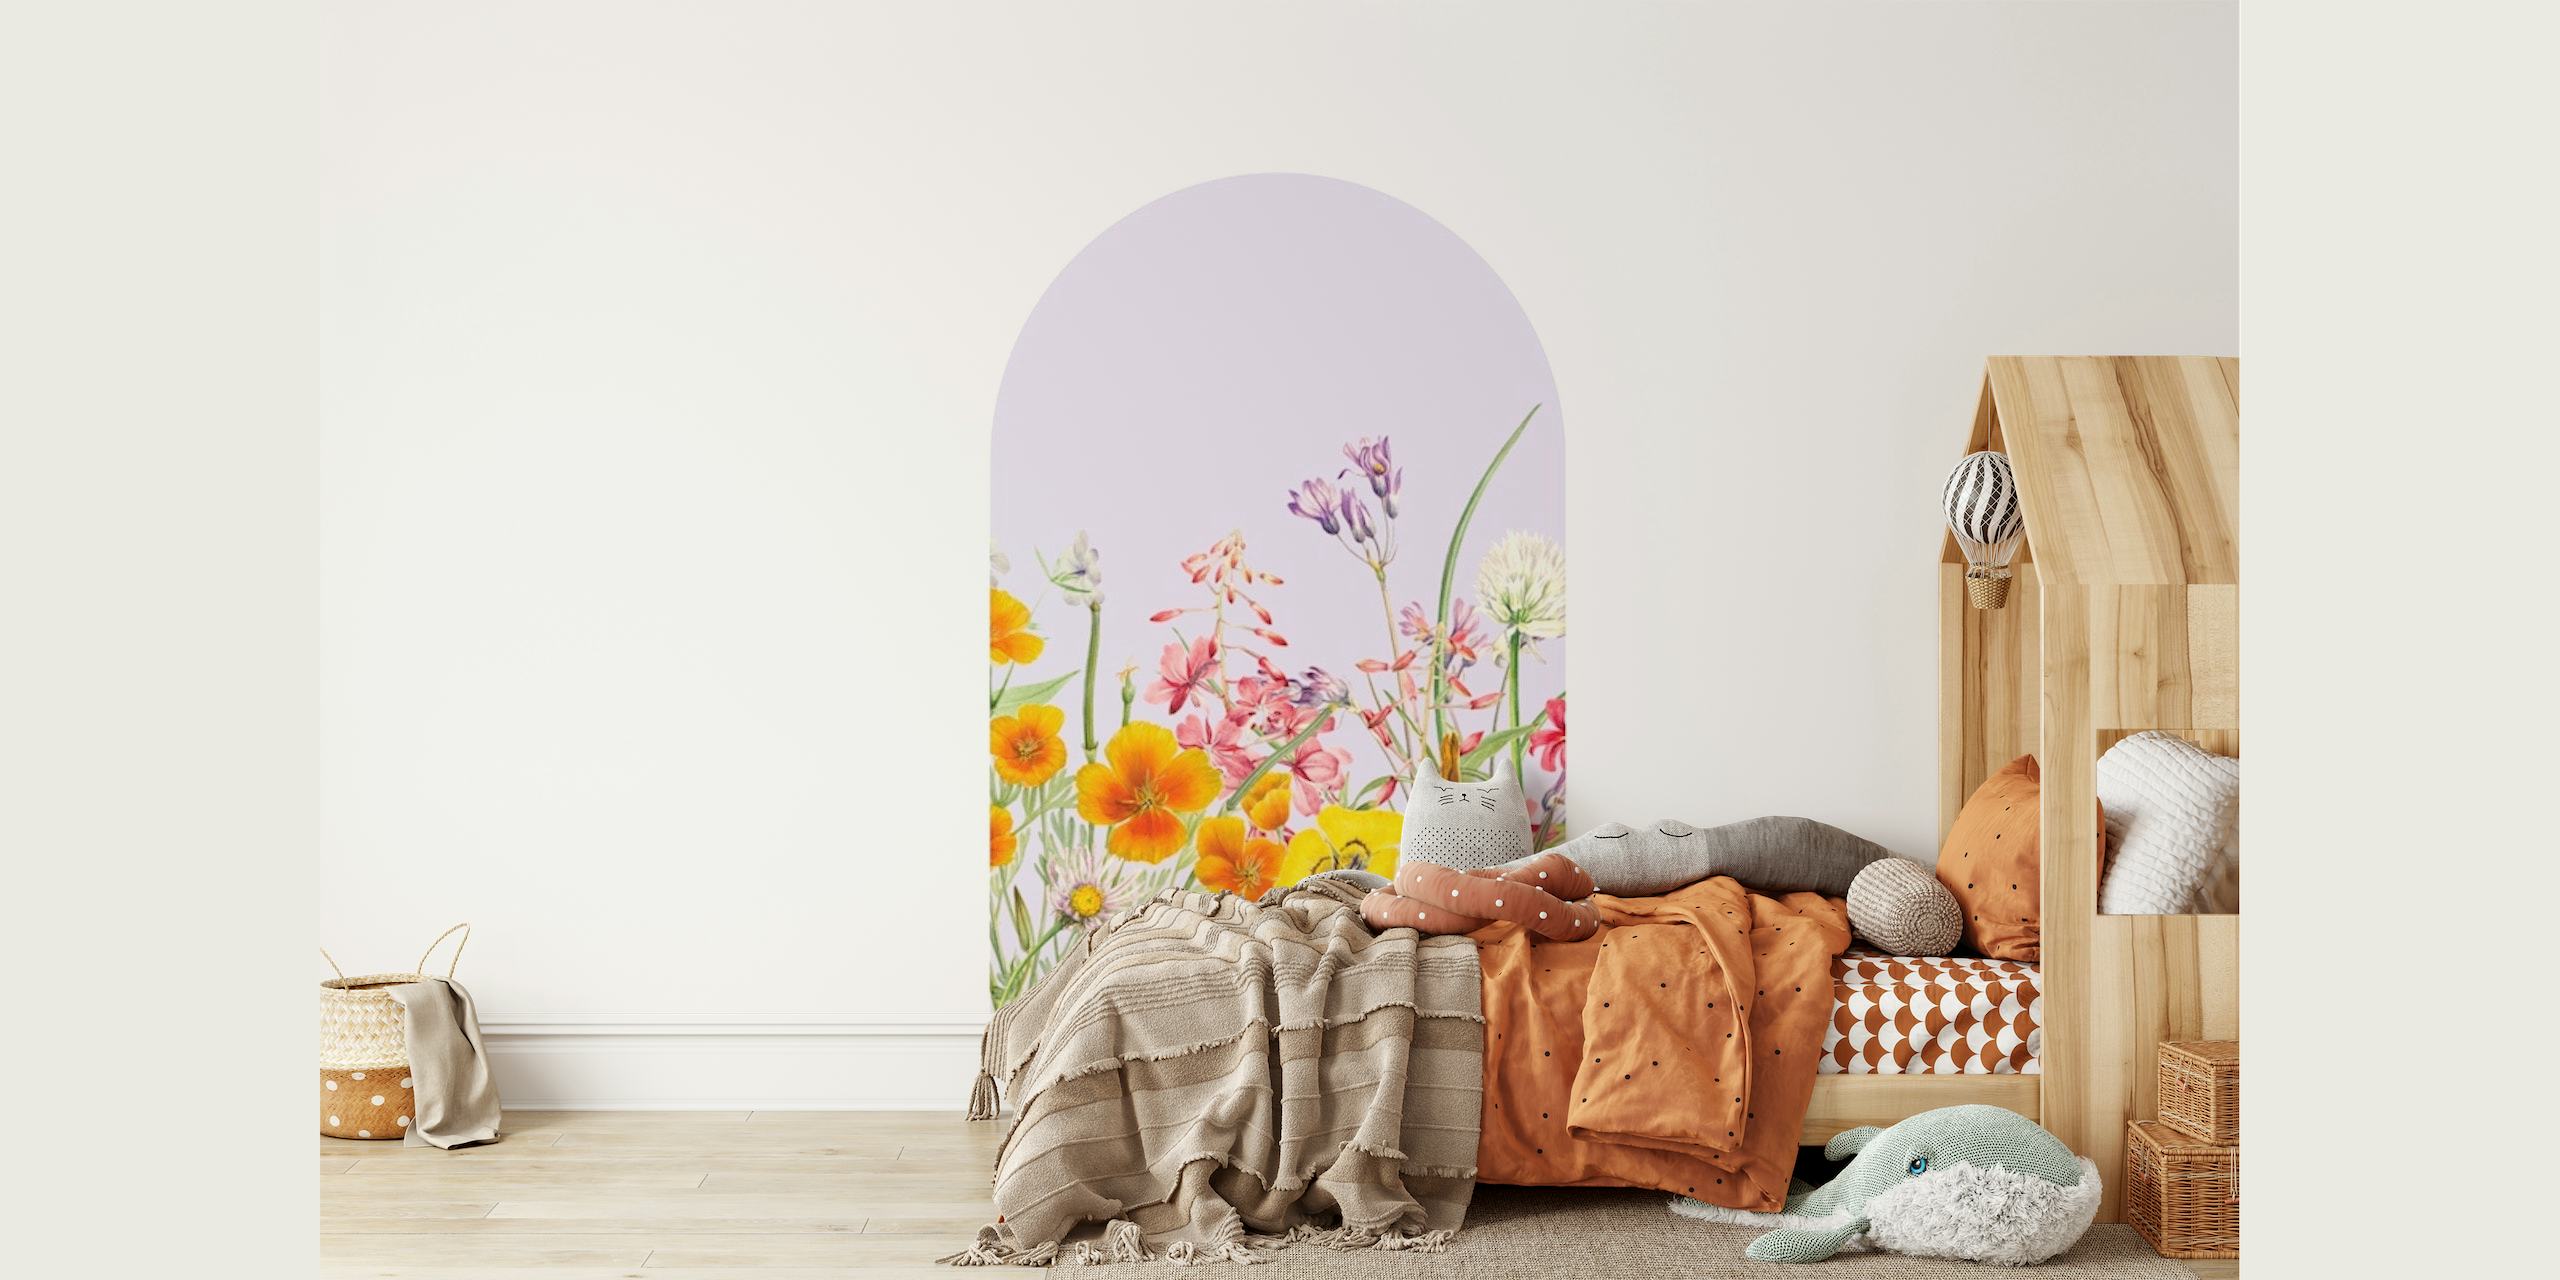 Fototapeta Pastel Floral Arch s divokými květy v jemných odstínech